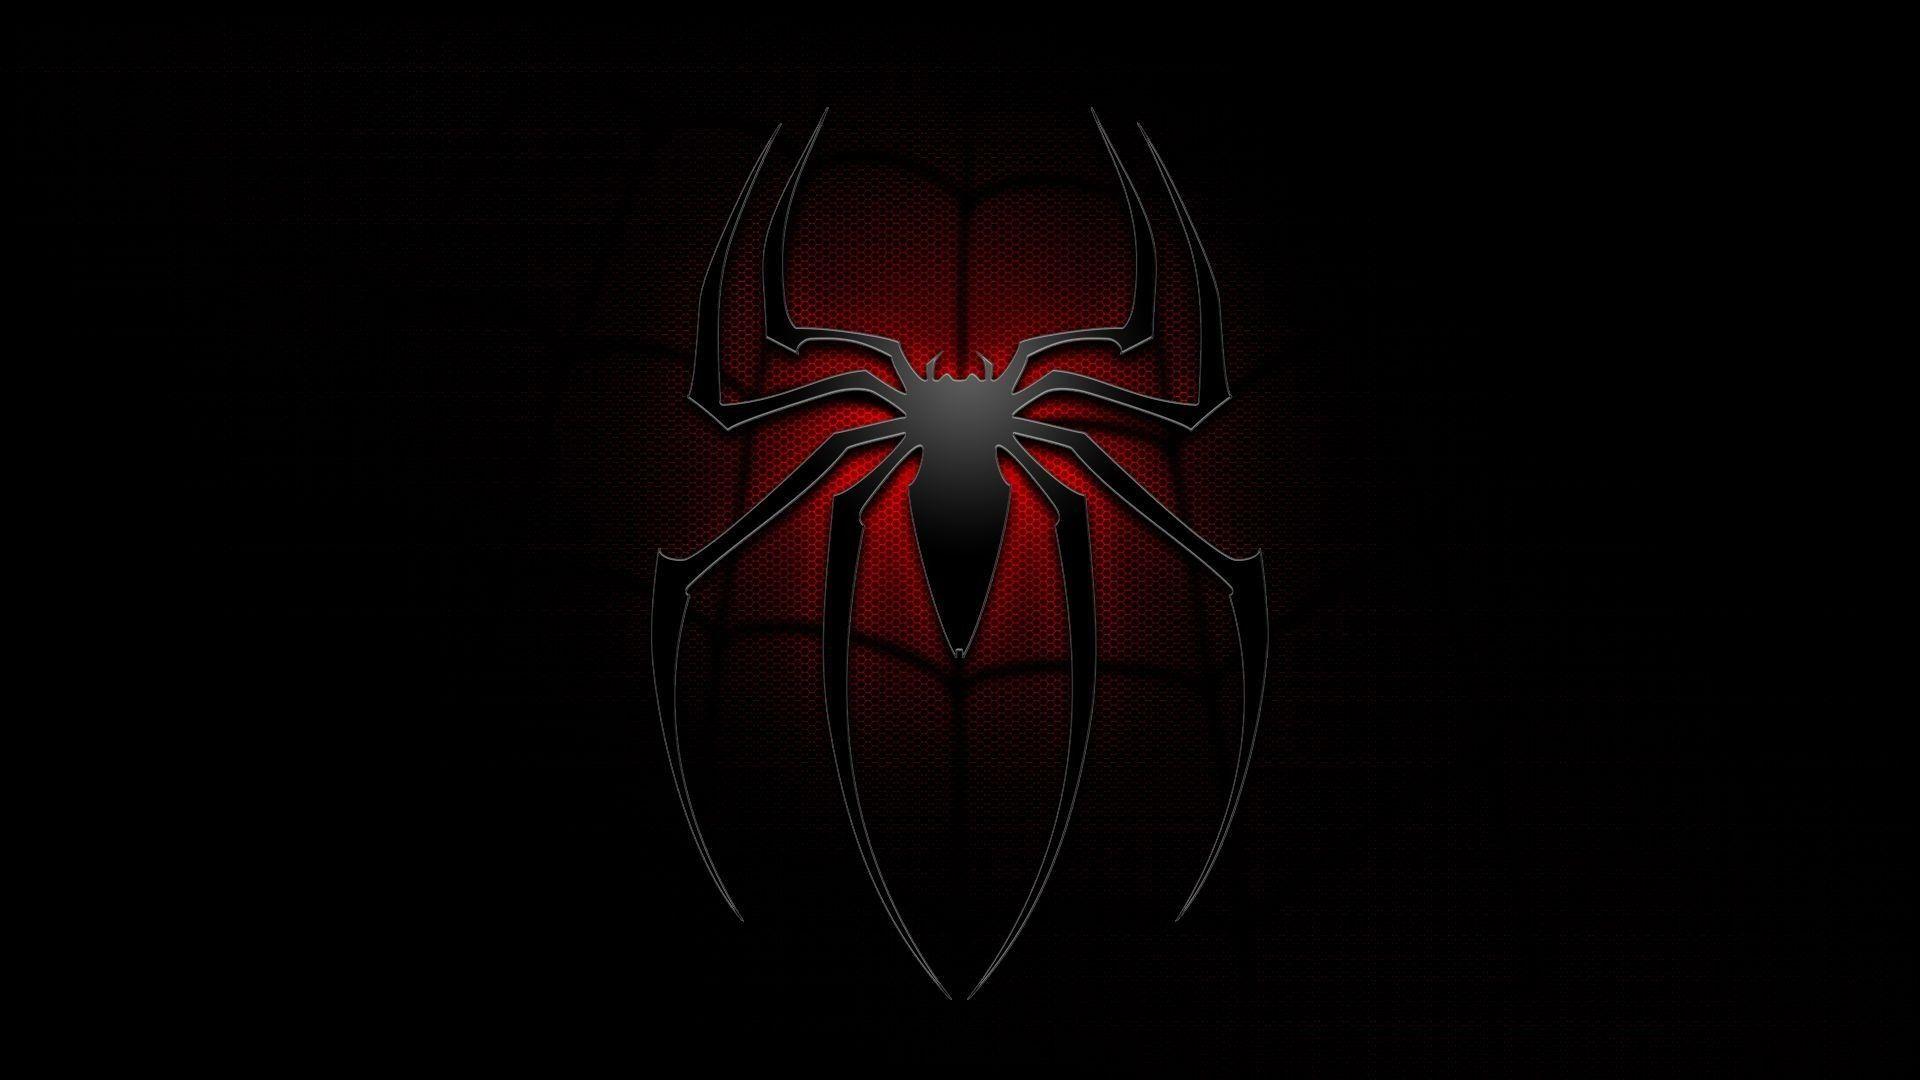 Black SpiderMan Suit 4K HD Superheroes Wallpapers  HD Wallpapers  ID  86706